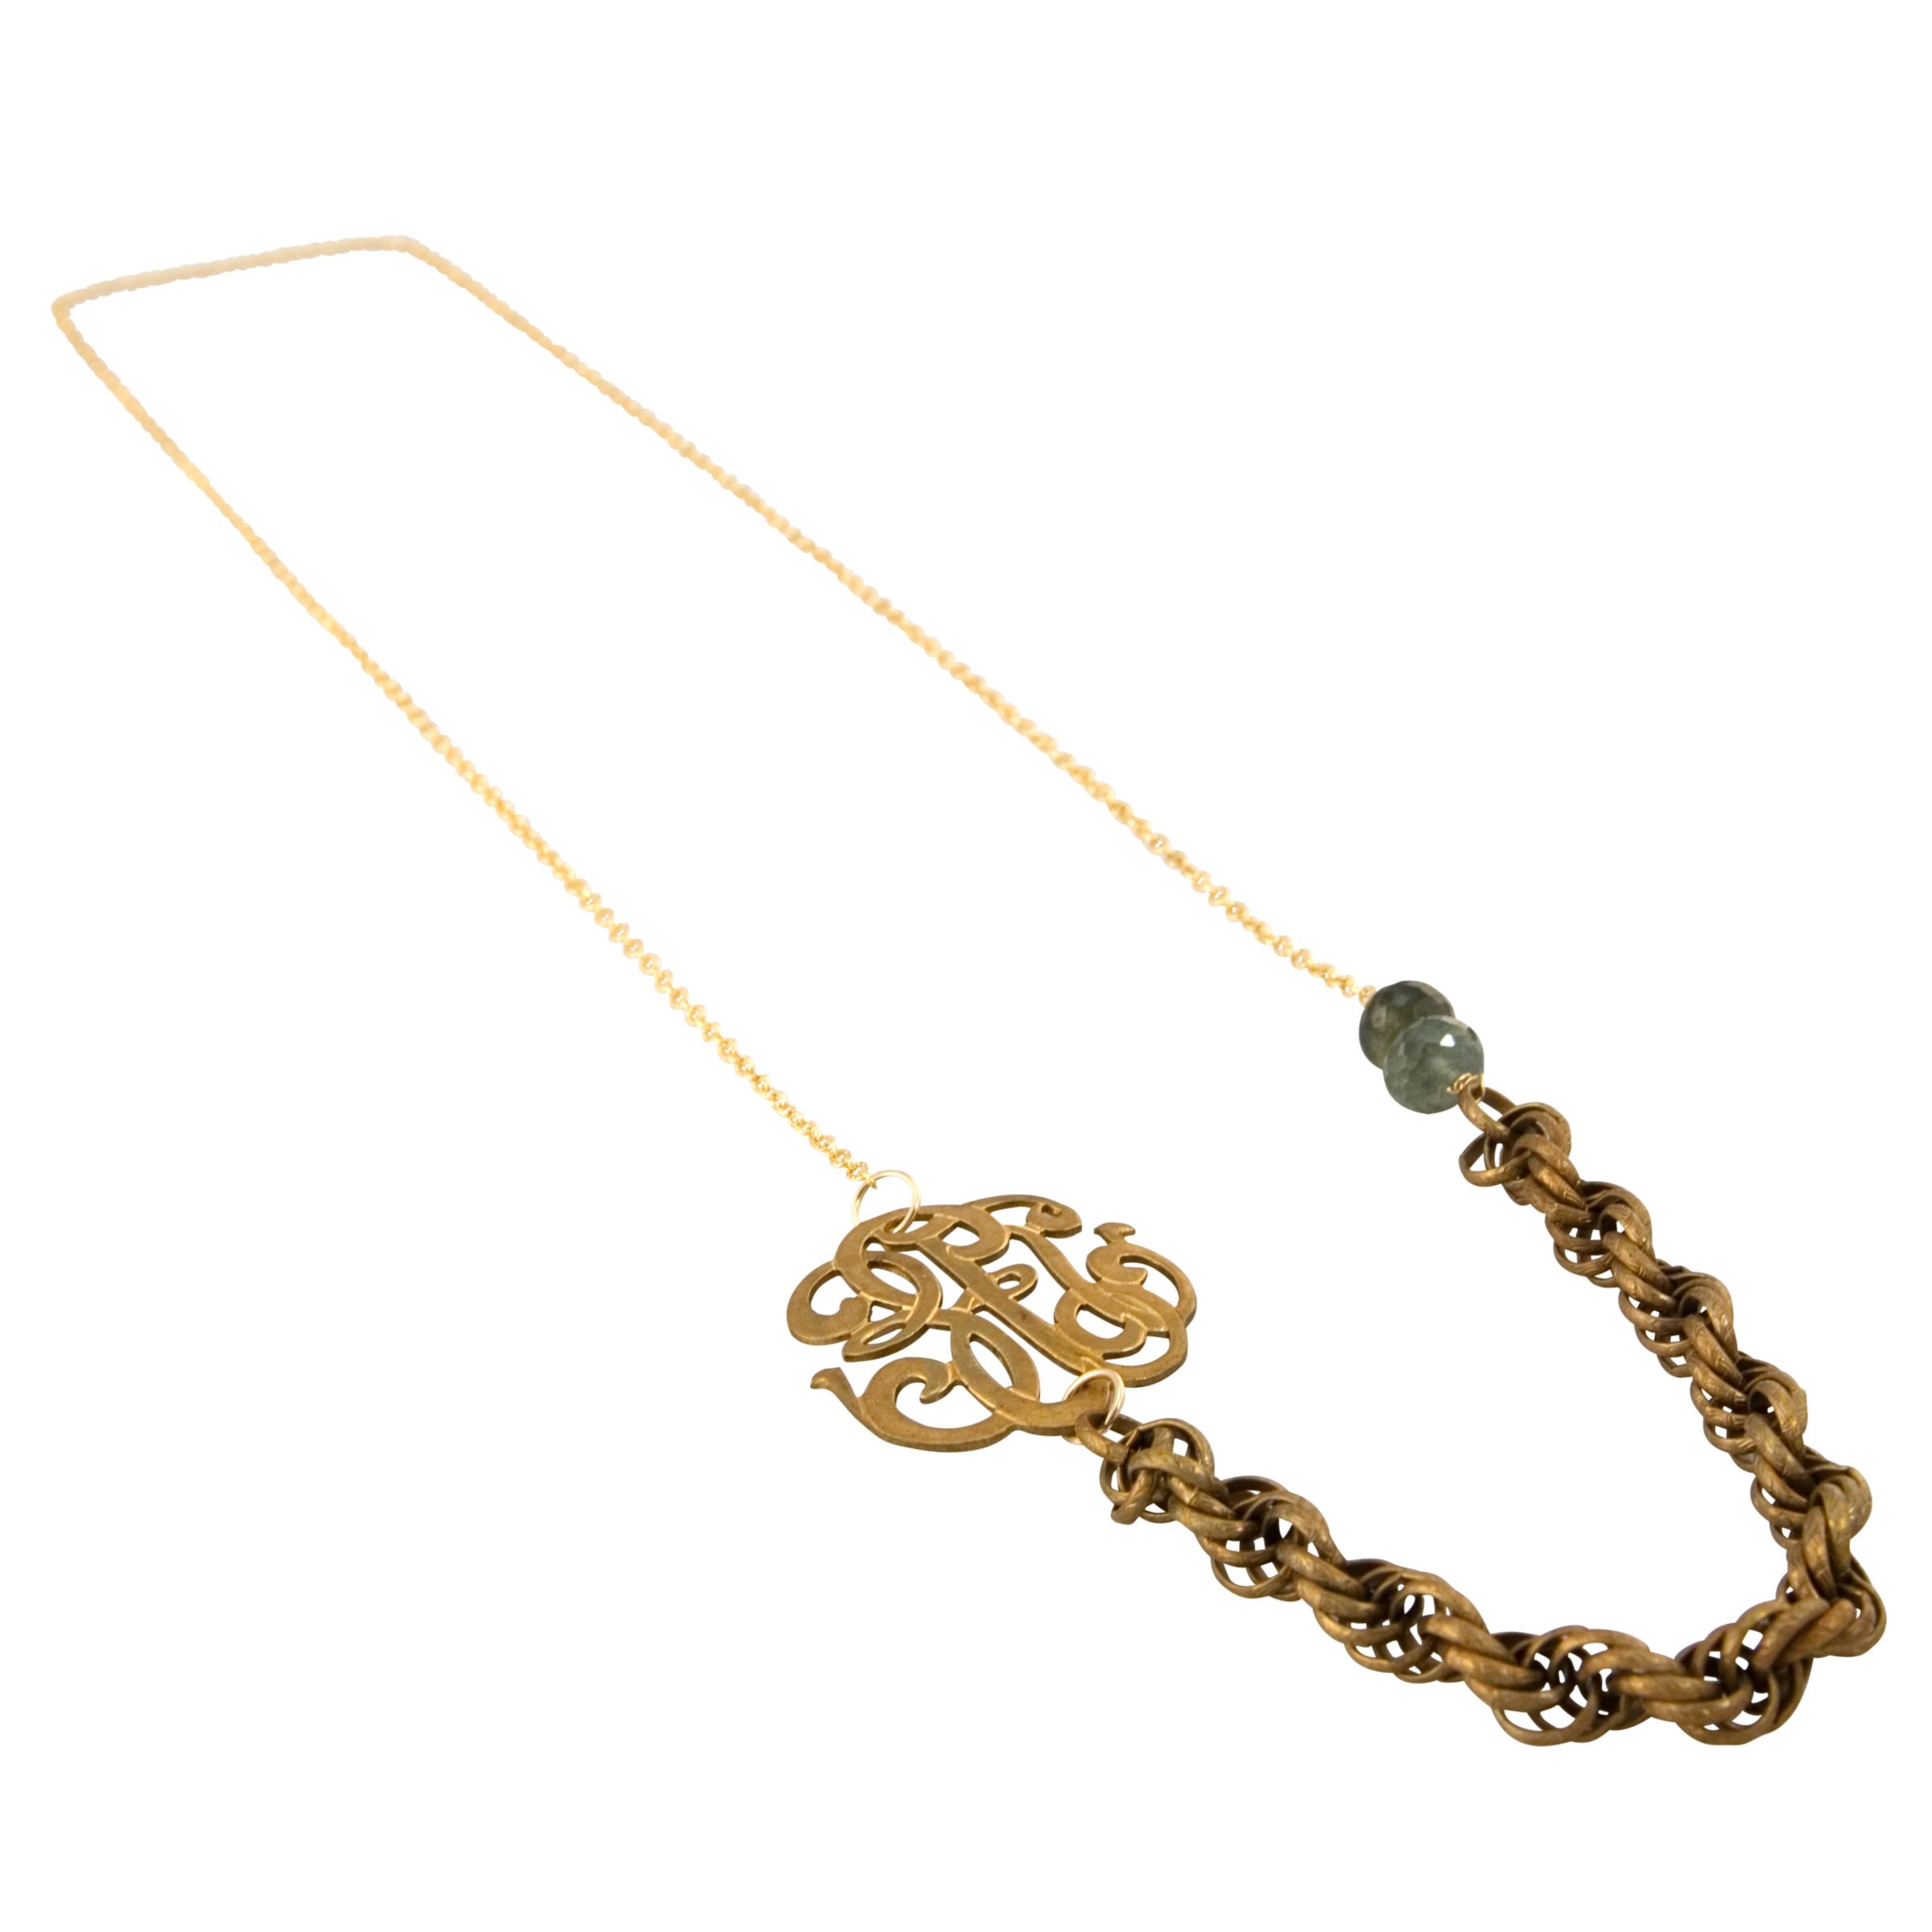 RueBelle Vintage Gold & Aquamarine Channel Necklace at John Lewis